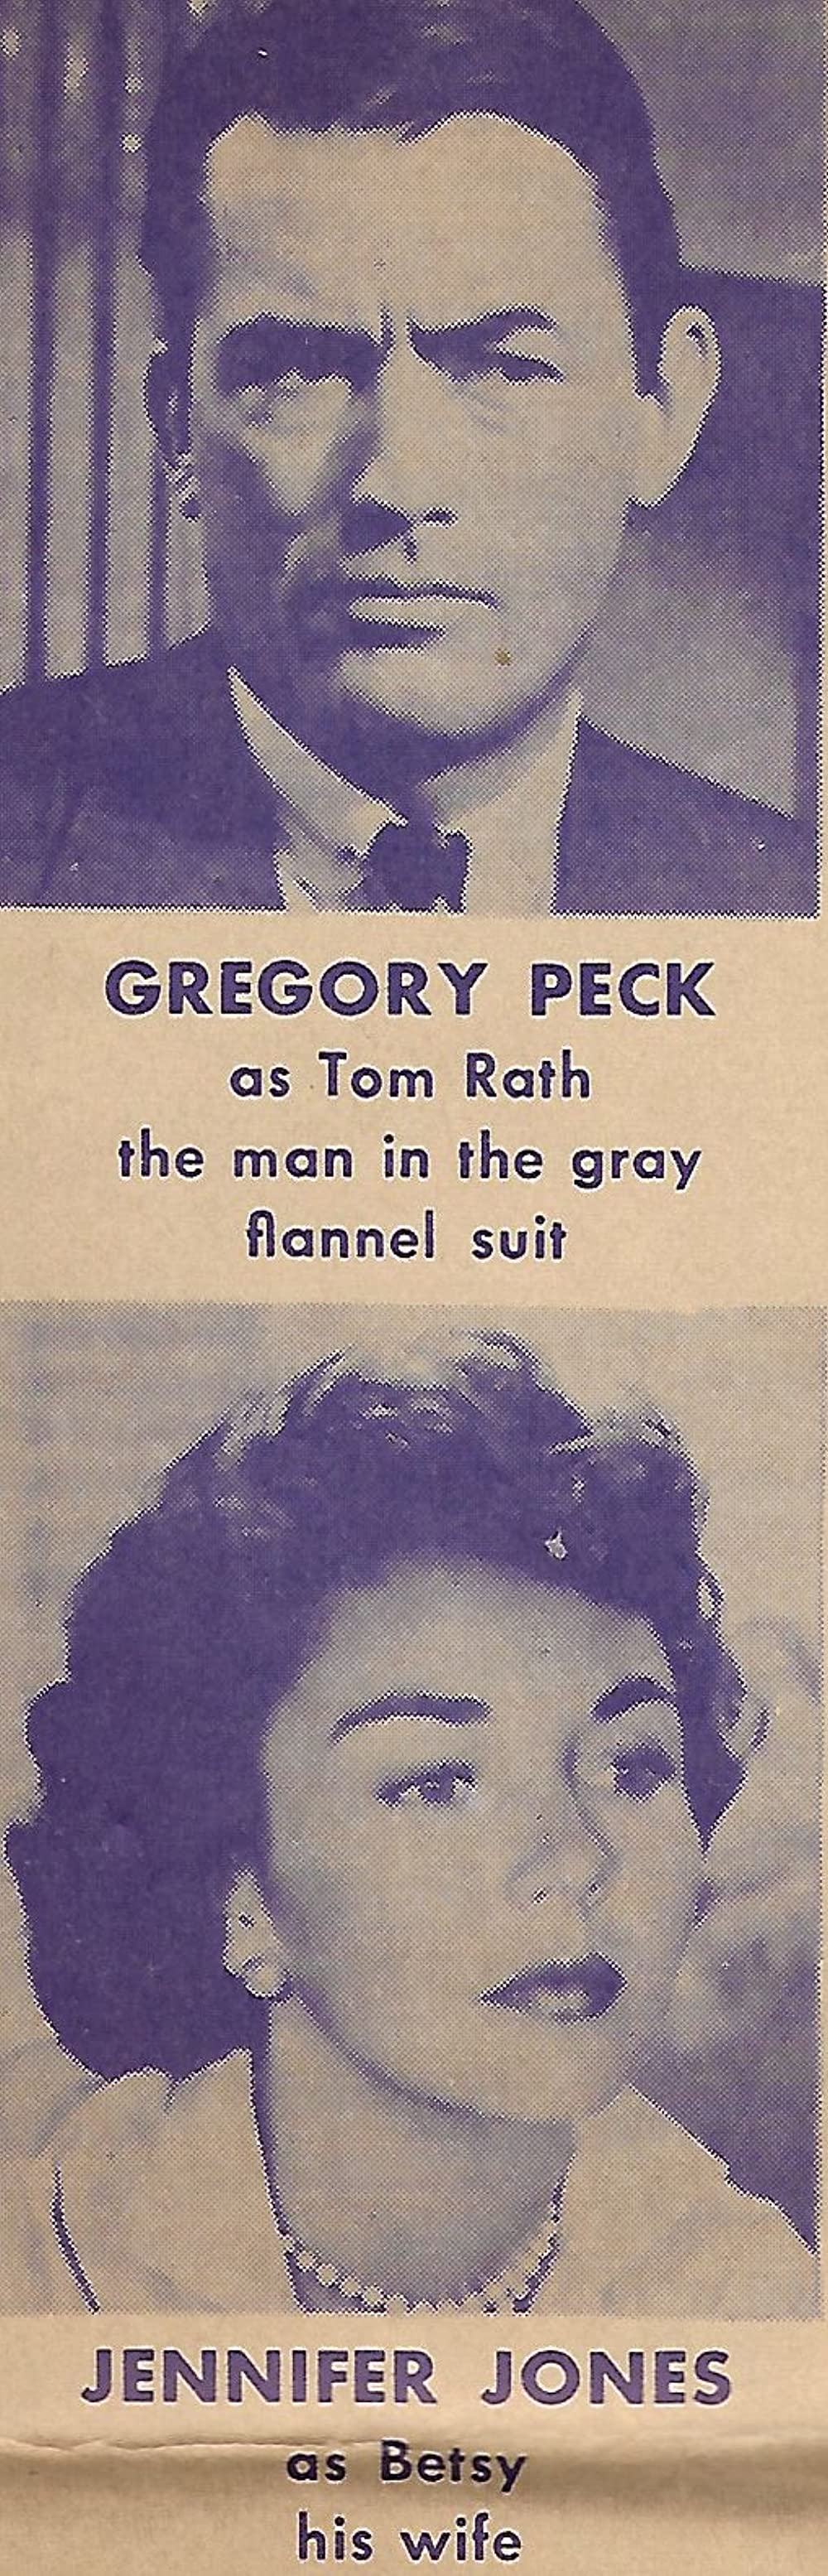 「灰色の服を着た男」グレゴリー・ペック & ジェニファー・ジョーンズの画像